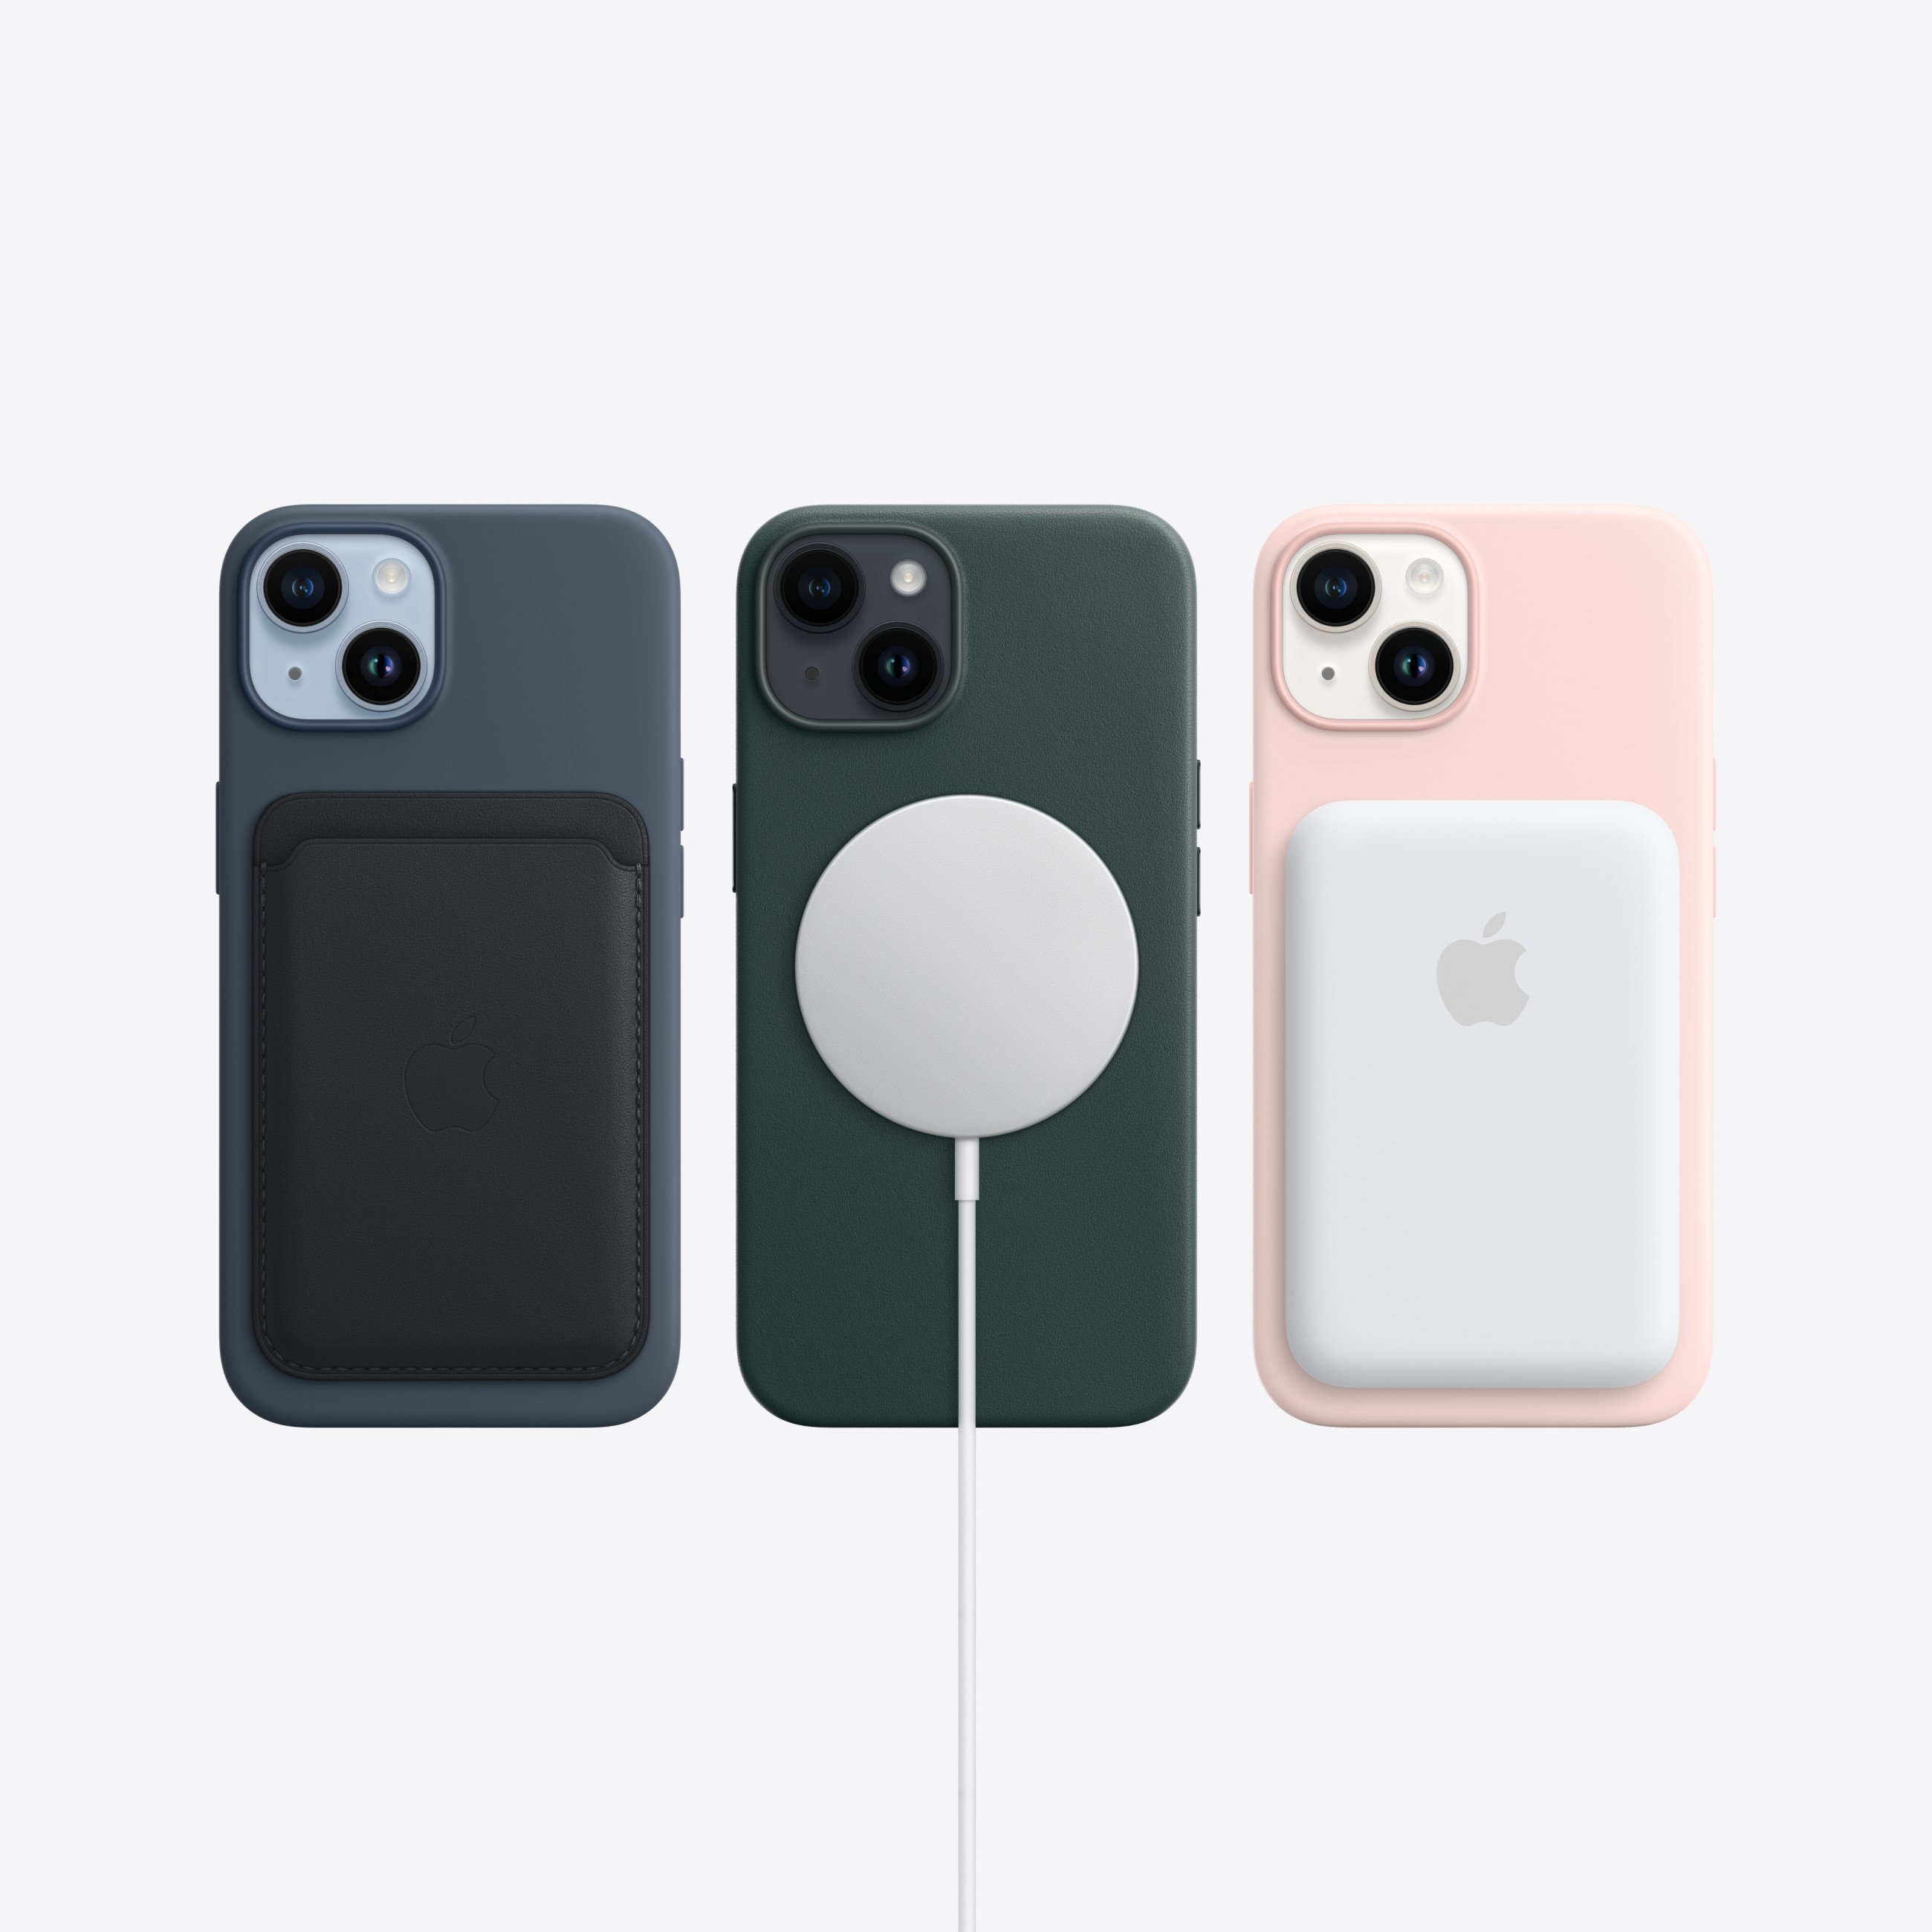 Apple iPhone 14 15,5 cm (6.1 Zoll) Dual-SIM iOS 16 5G 512 GB Weiß